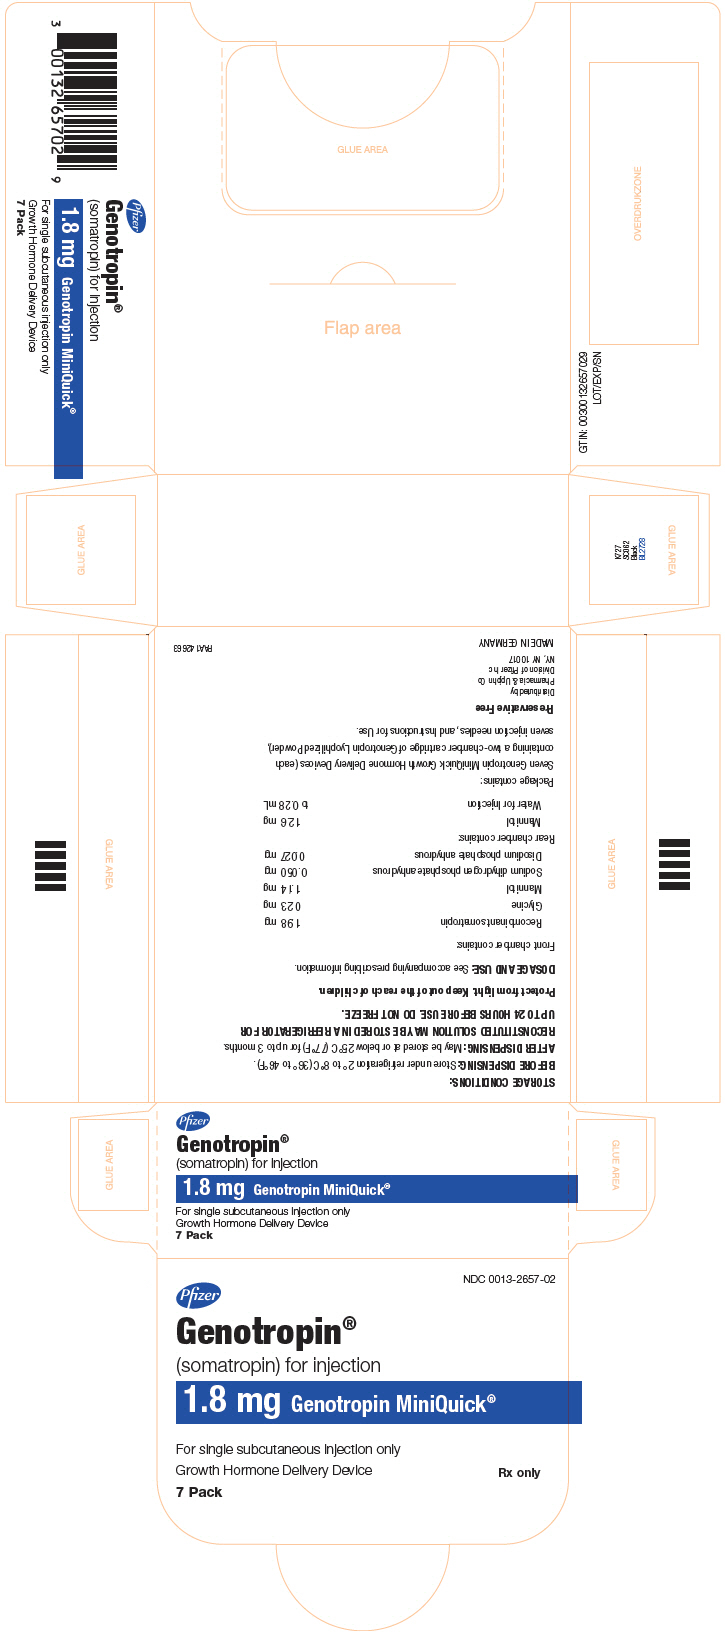 Principal Display Panel - 1.8 mg Kit Carton